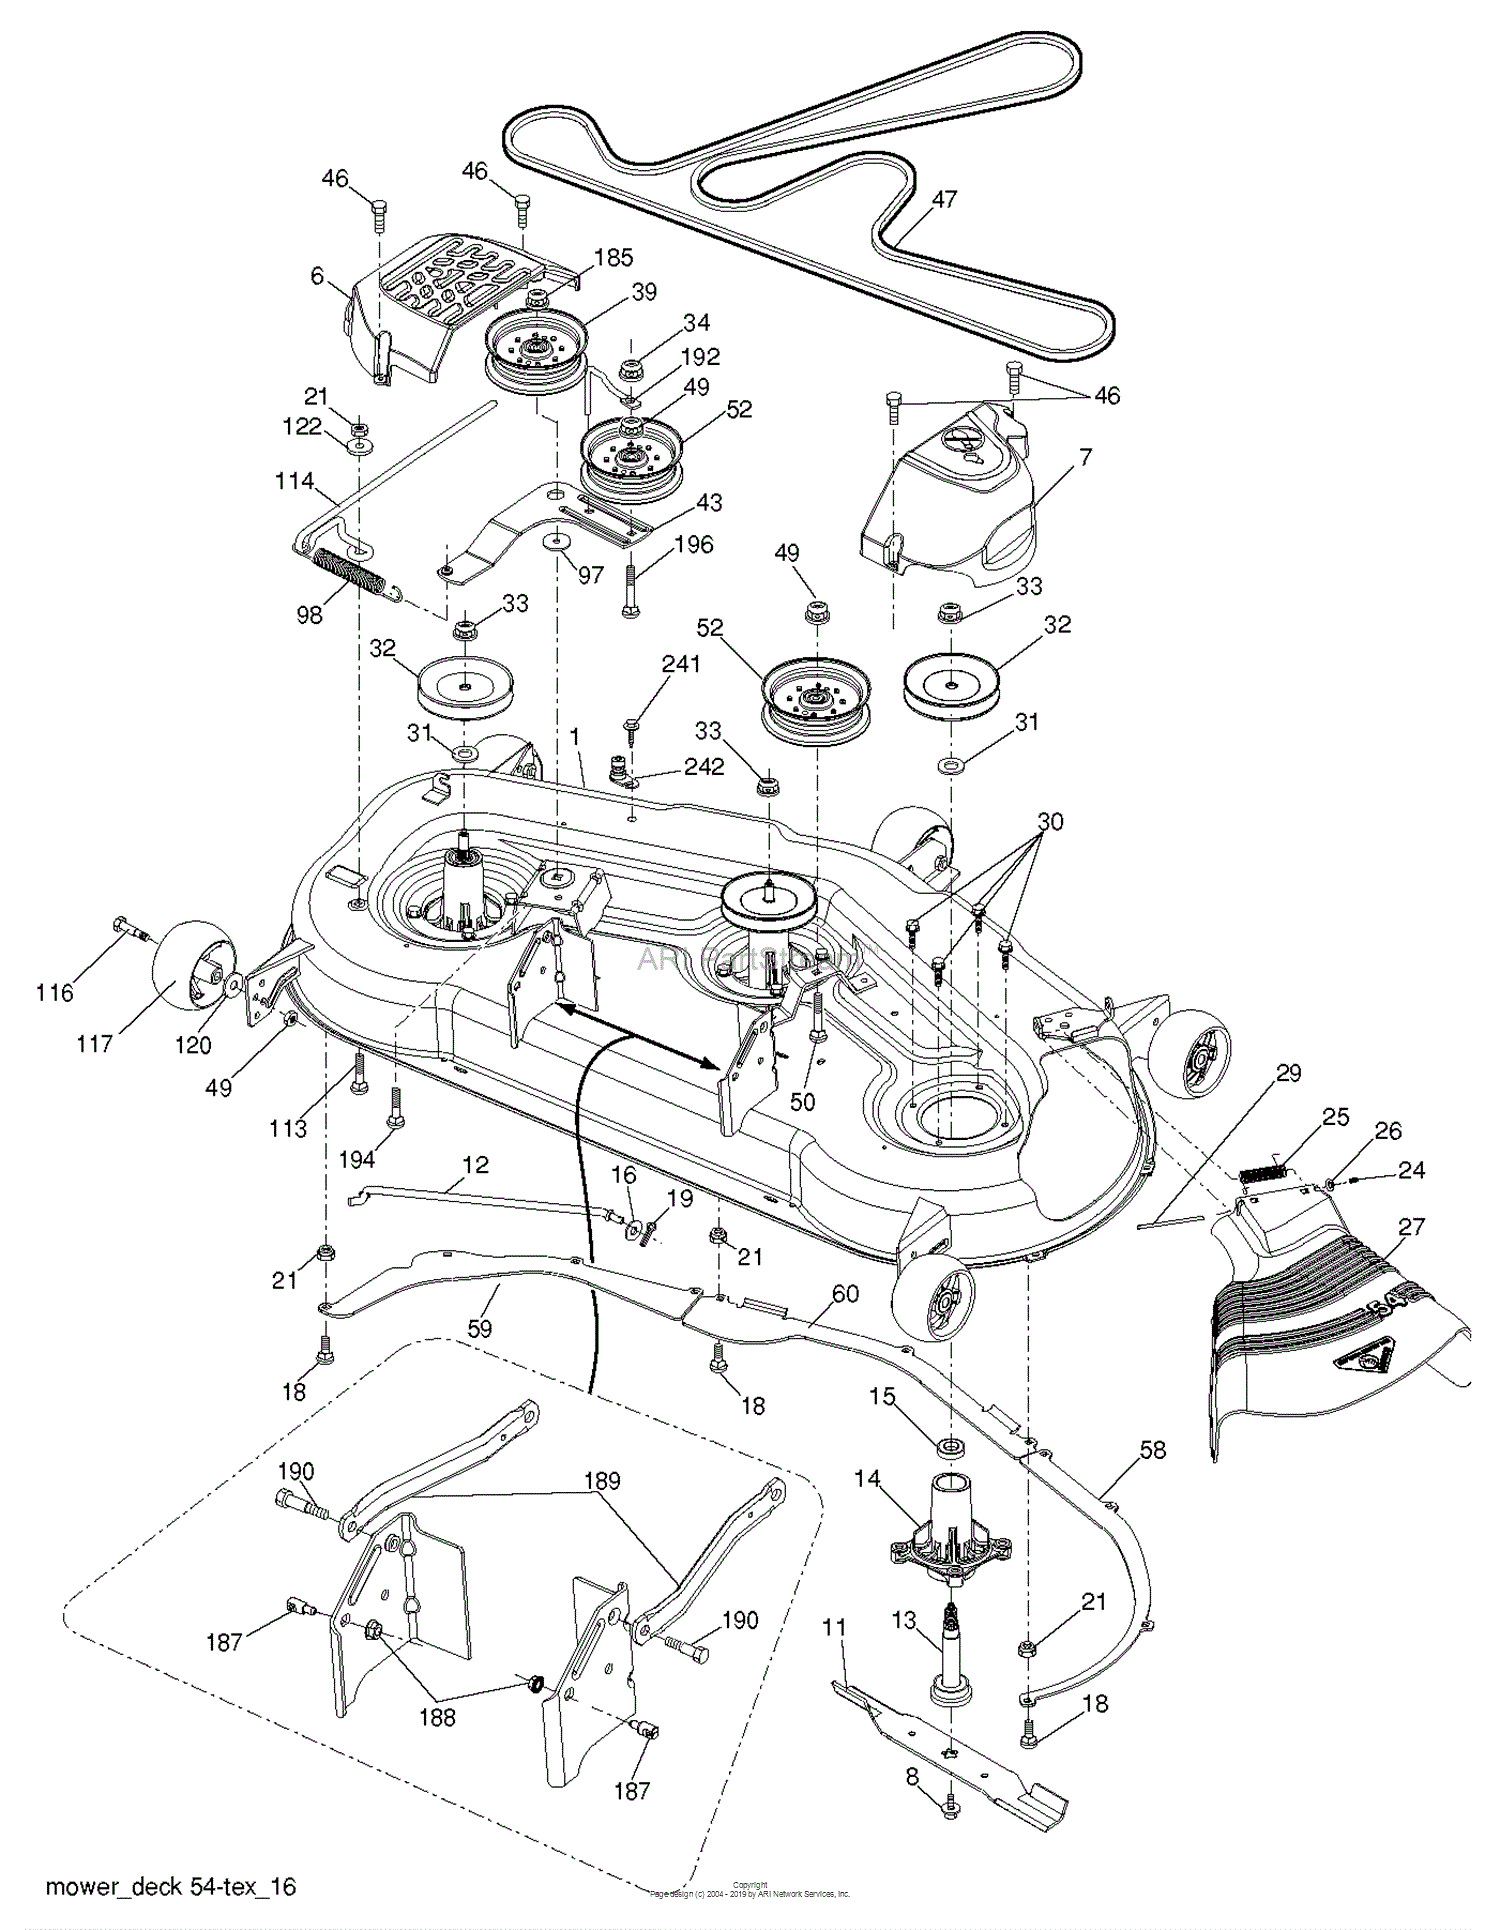 Husqvarna LGT2554 96045001504 (201202) Parts Diagram for MOWER DECK